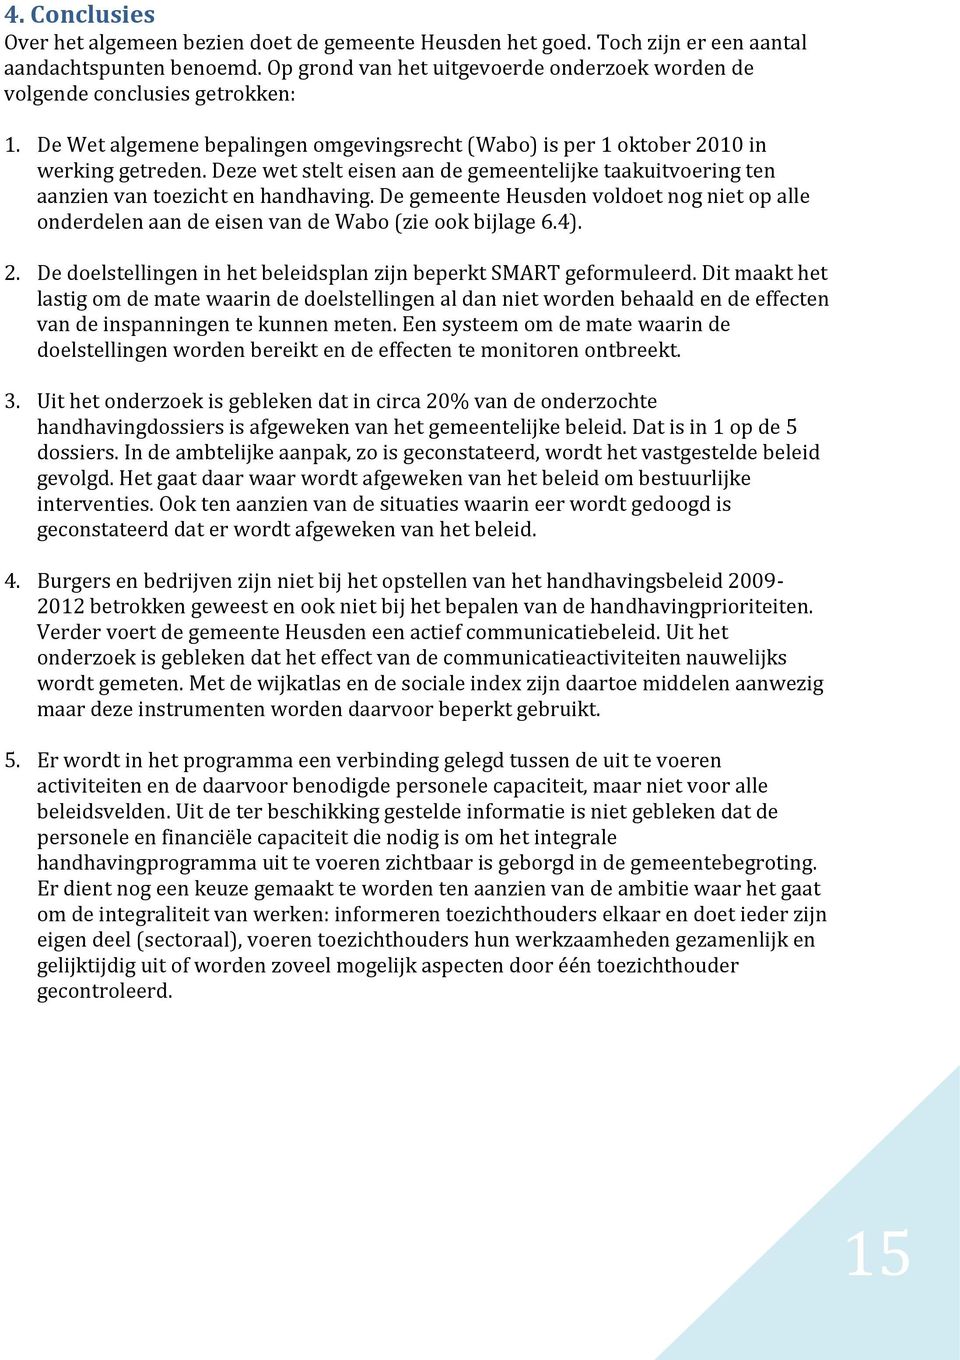 Deze wet stelt eisen aan de gemeentelijke taakuitvoering ten aanzien van toezicht en handhaving. De gemeente Heusden voldoet nog niet op alle onderdelen aan de eisen van de Wabo (zie ook bijlage 6.4).